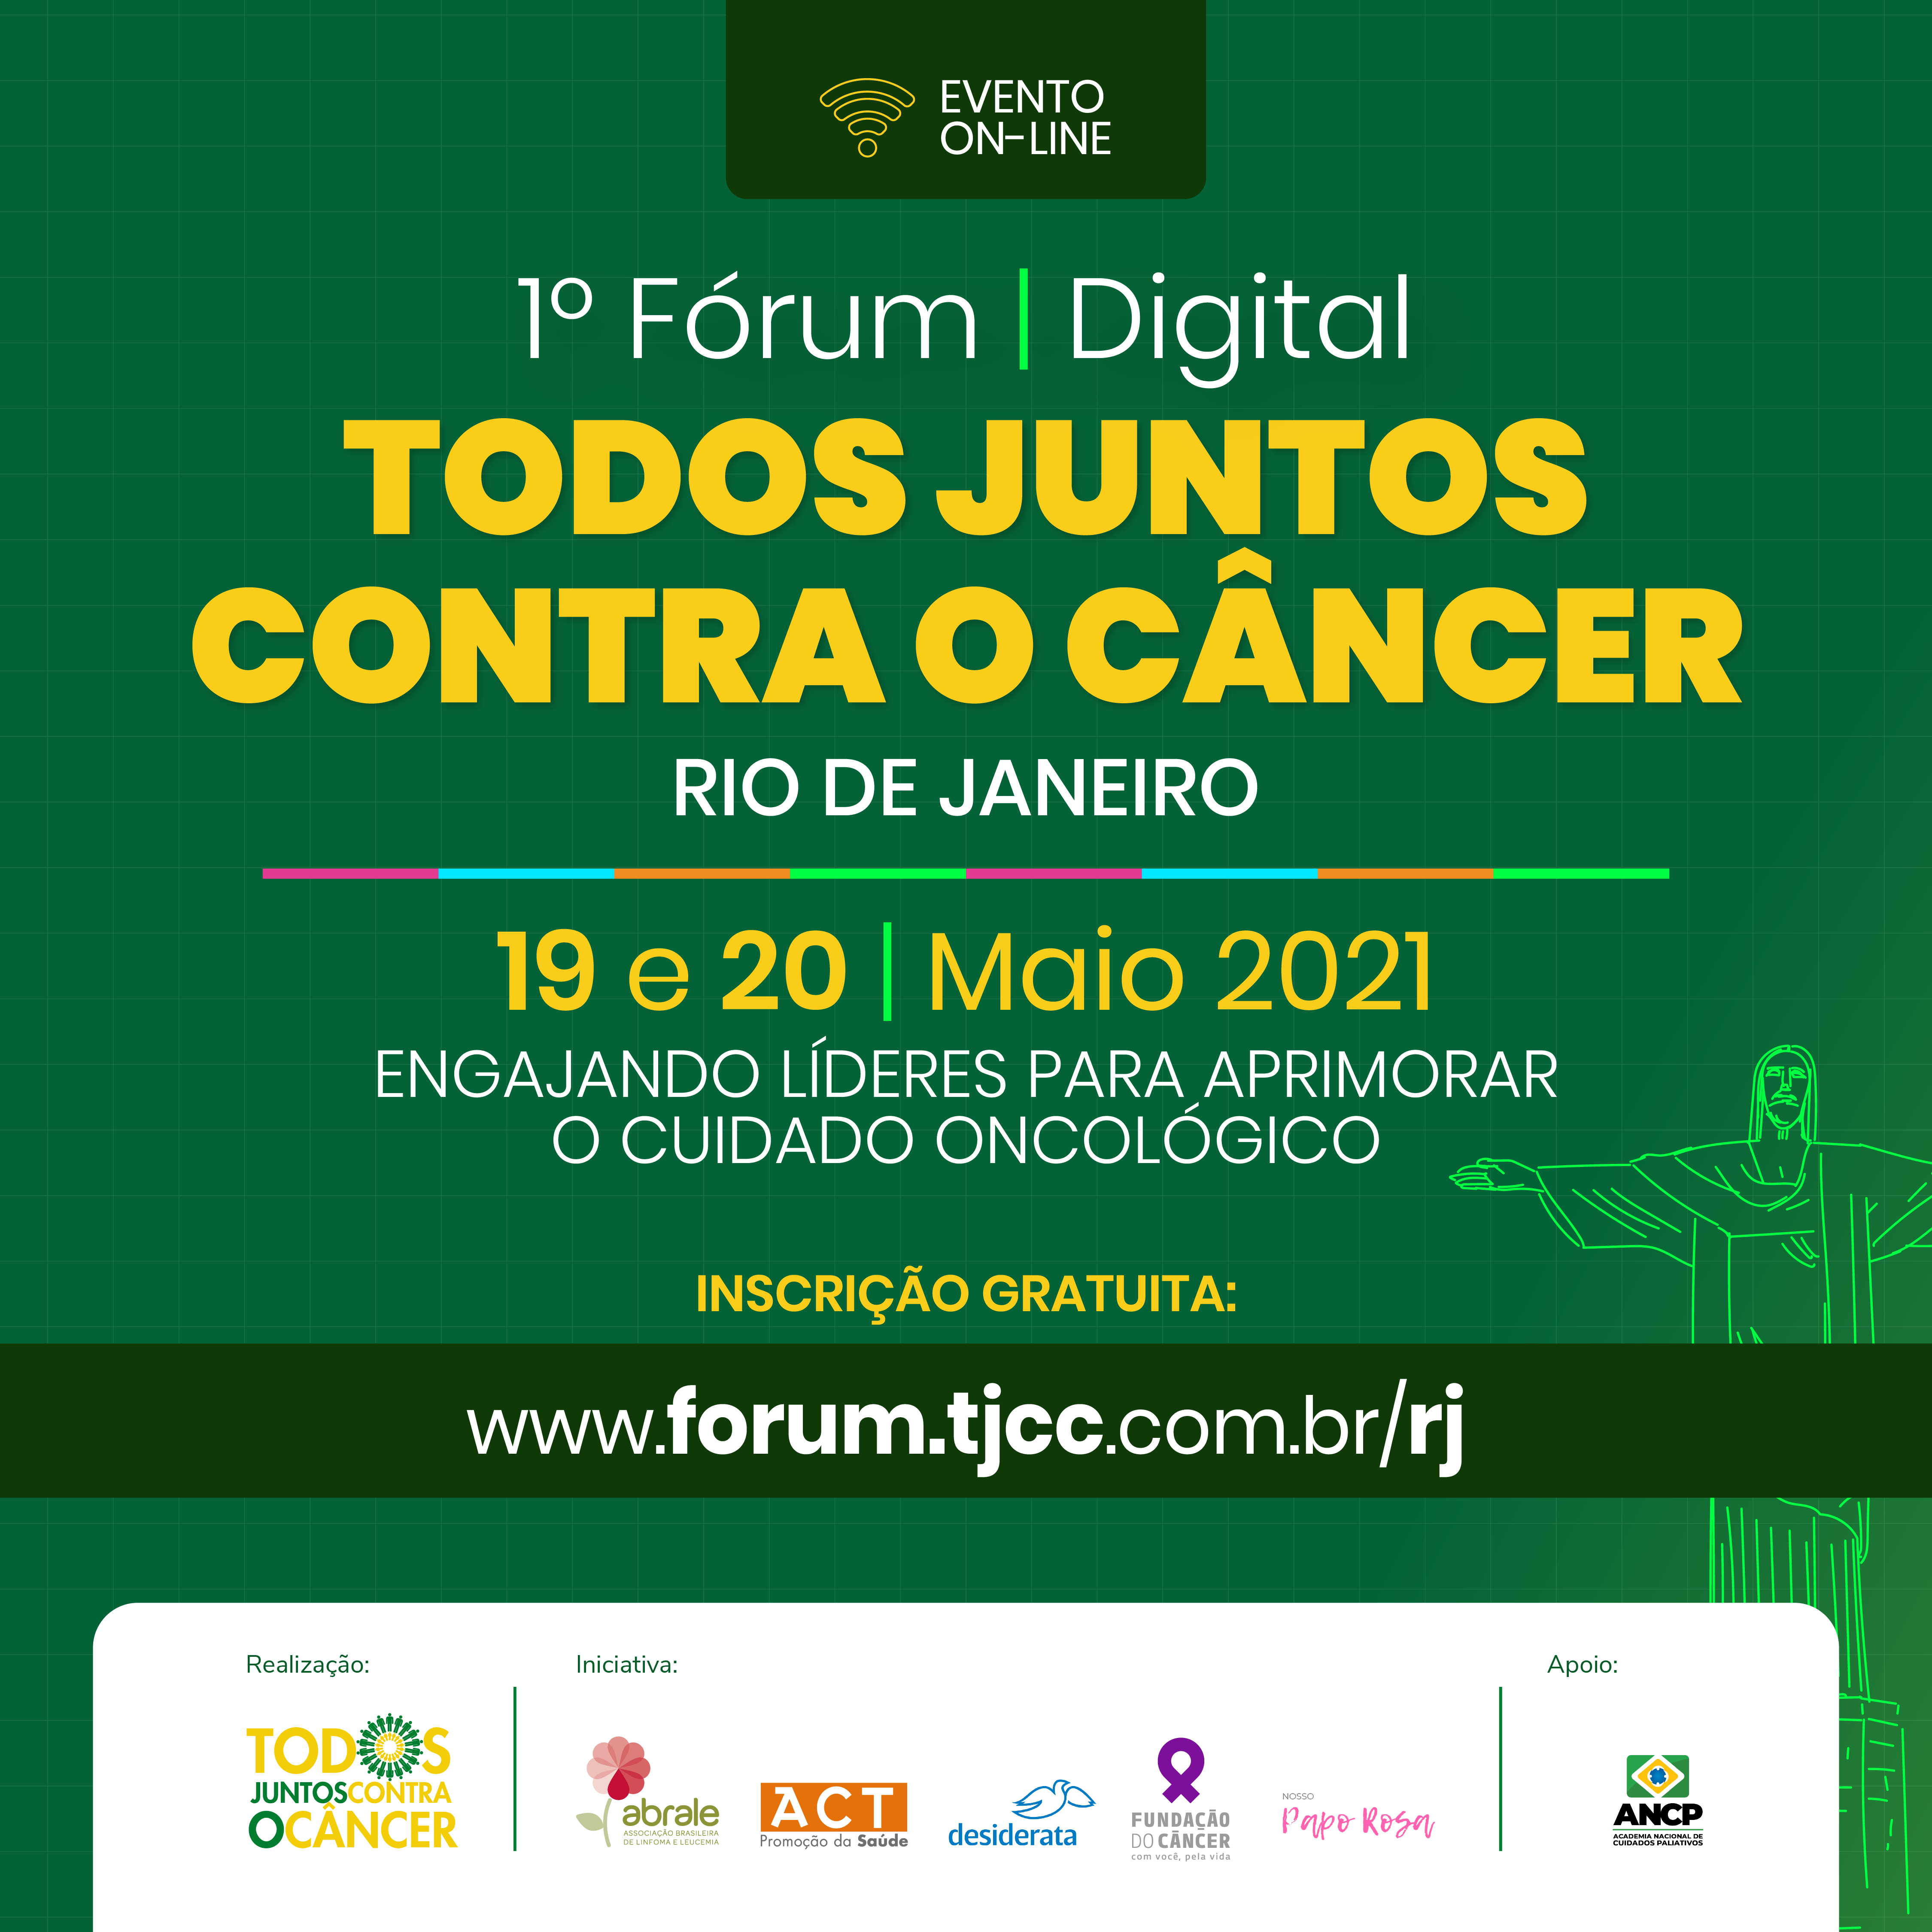 ANCP apoia e participa do 1ºFórum TJCC Rio de Janeiro